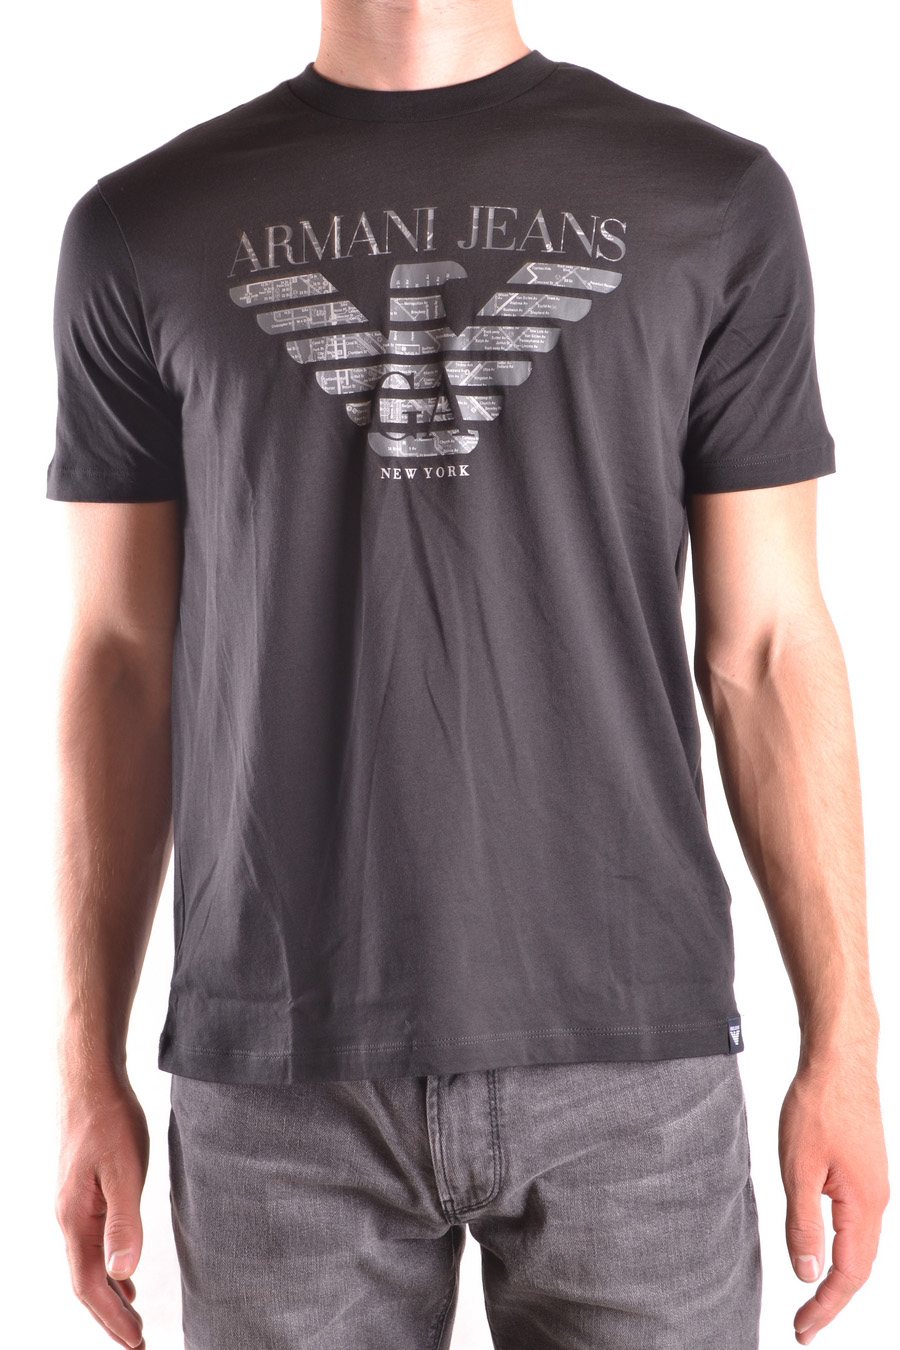 ARMANI JEANS T-shirts | ViganoBoutique.com